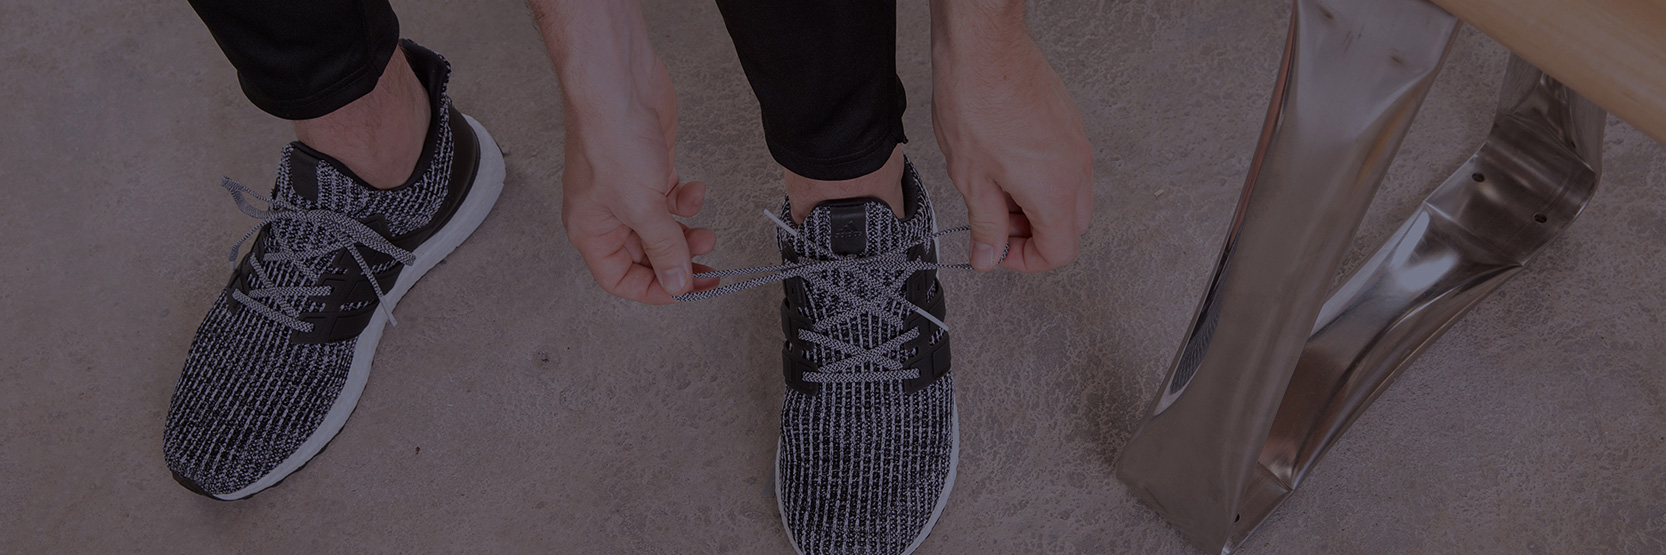 طريقة معالجة الحذاء الضيق وجعله على مقاس قدمك بشكل طبيعي